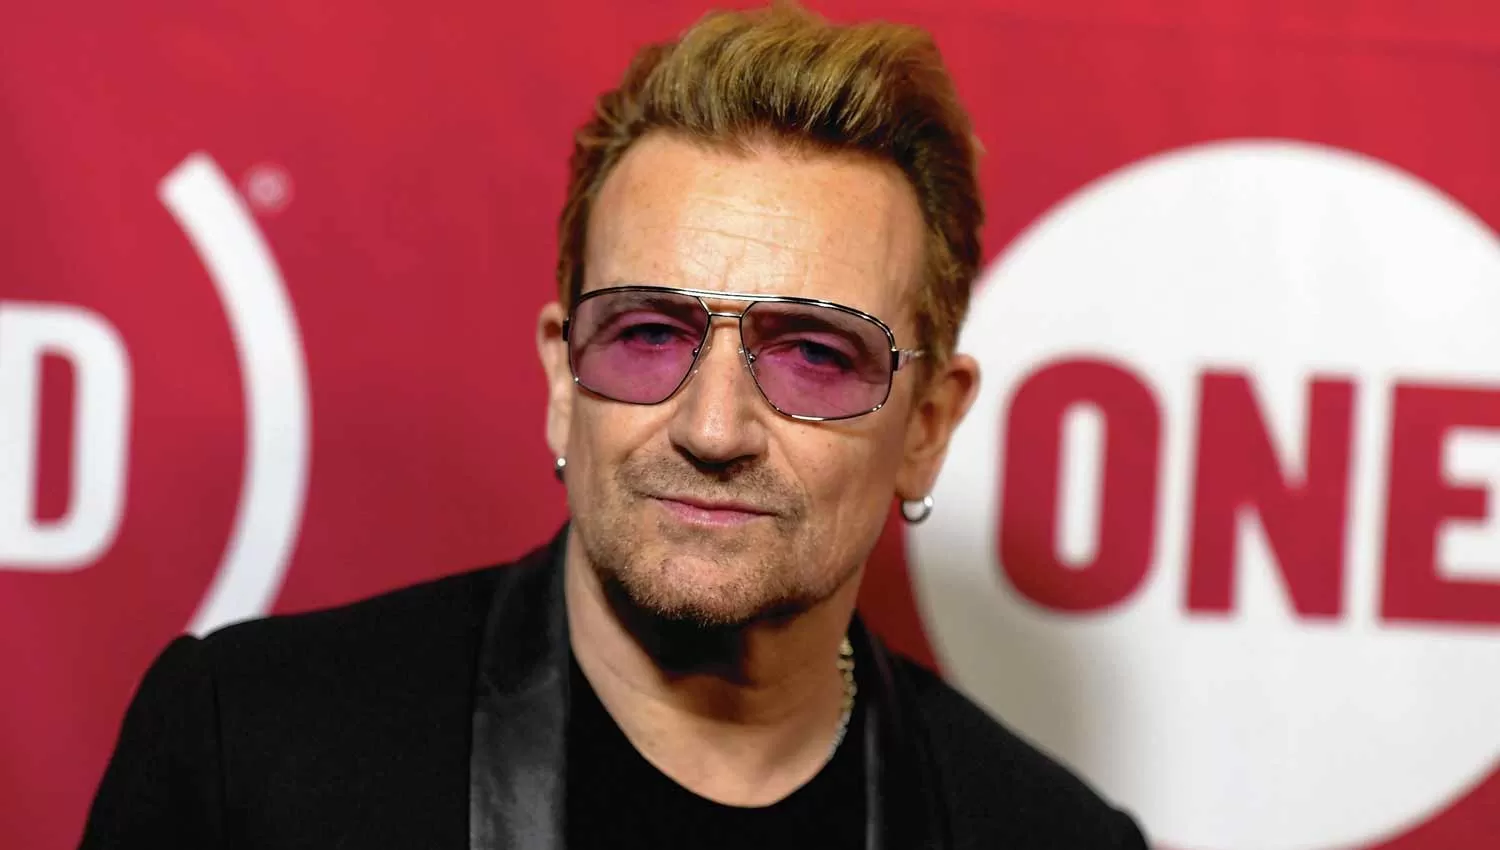 PIDIÓ DISCULPAS. Bono, de U2, reconoció un caso de abuso en su Fundación One. (U2NEWS)